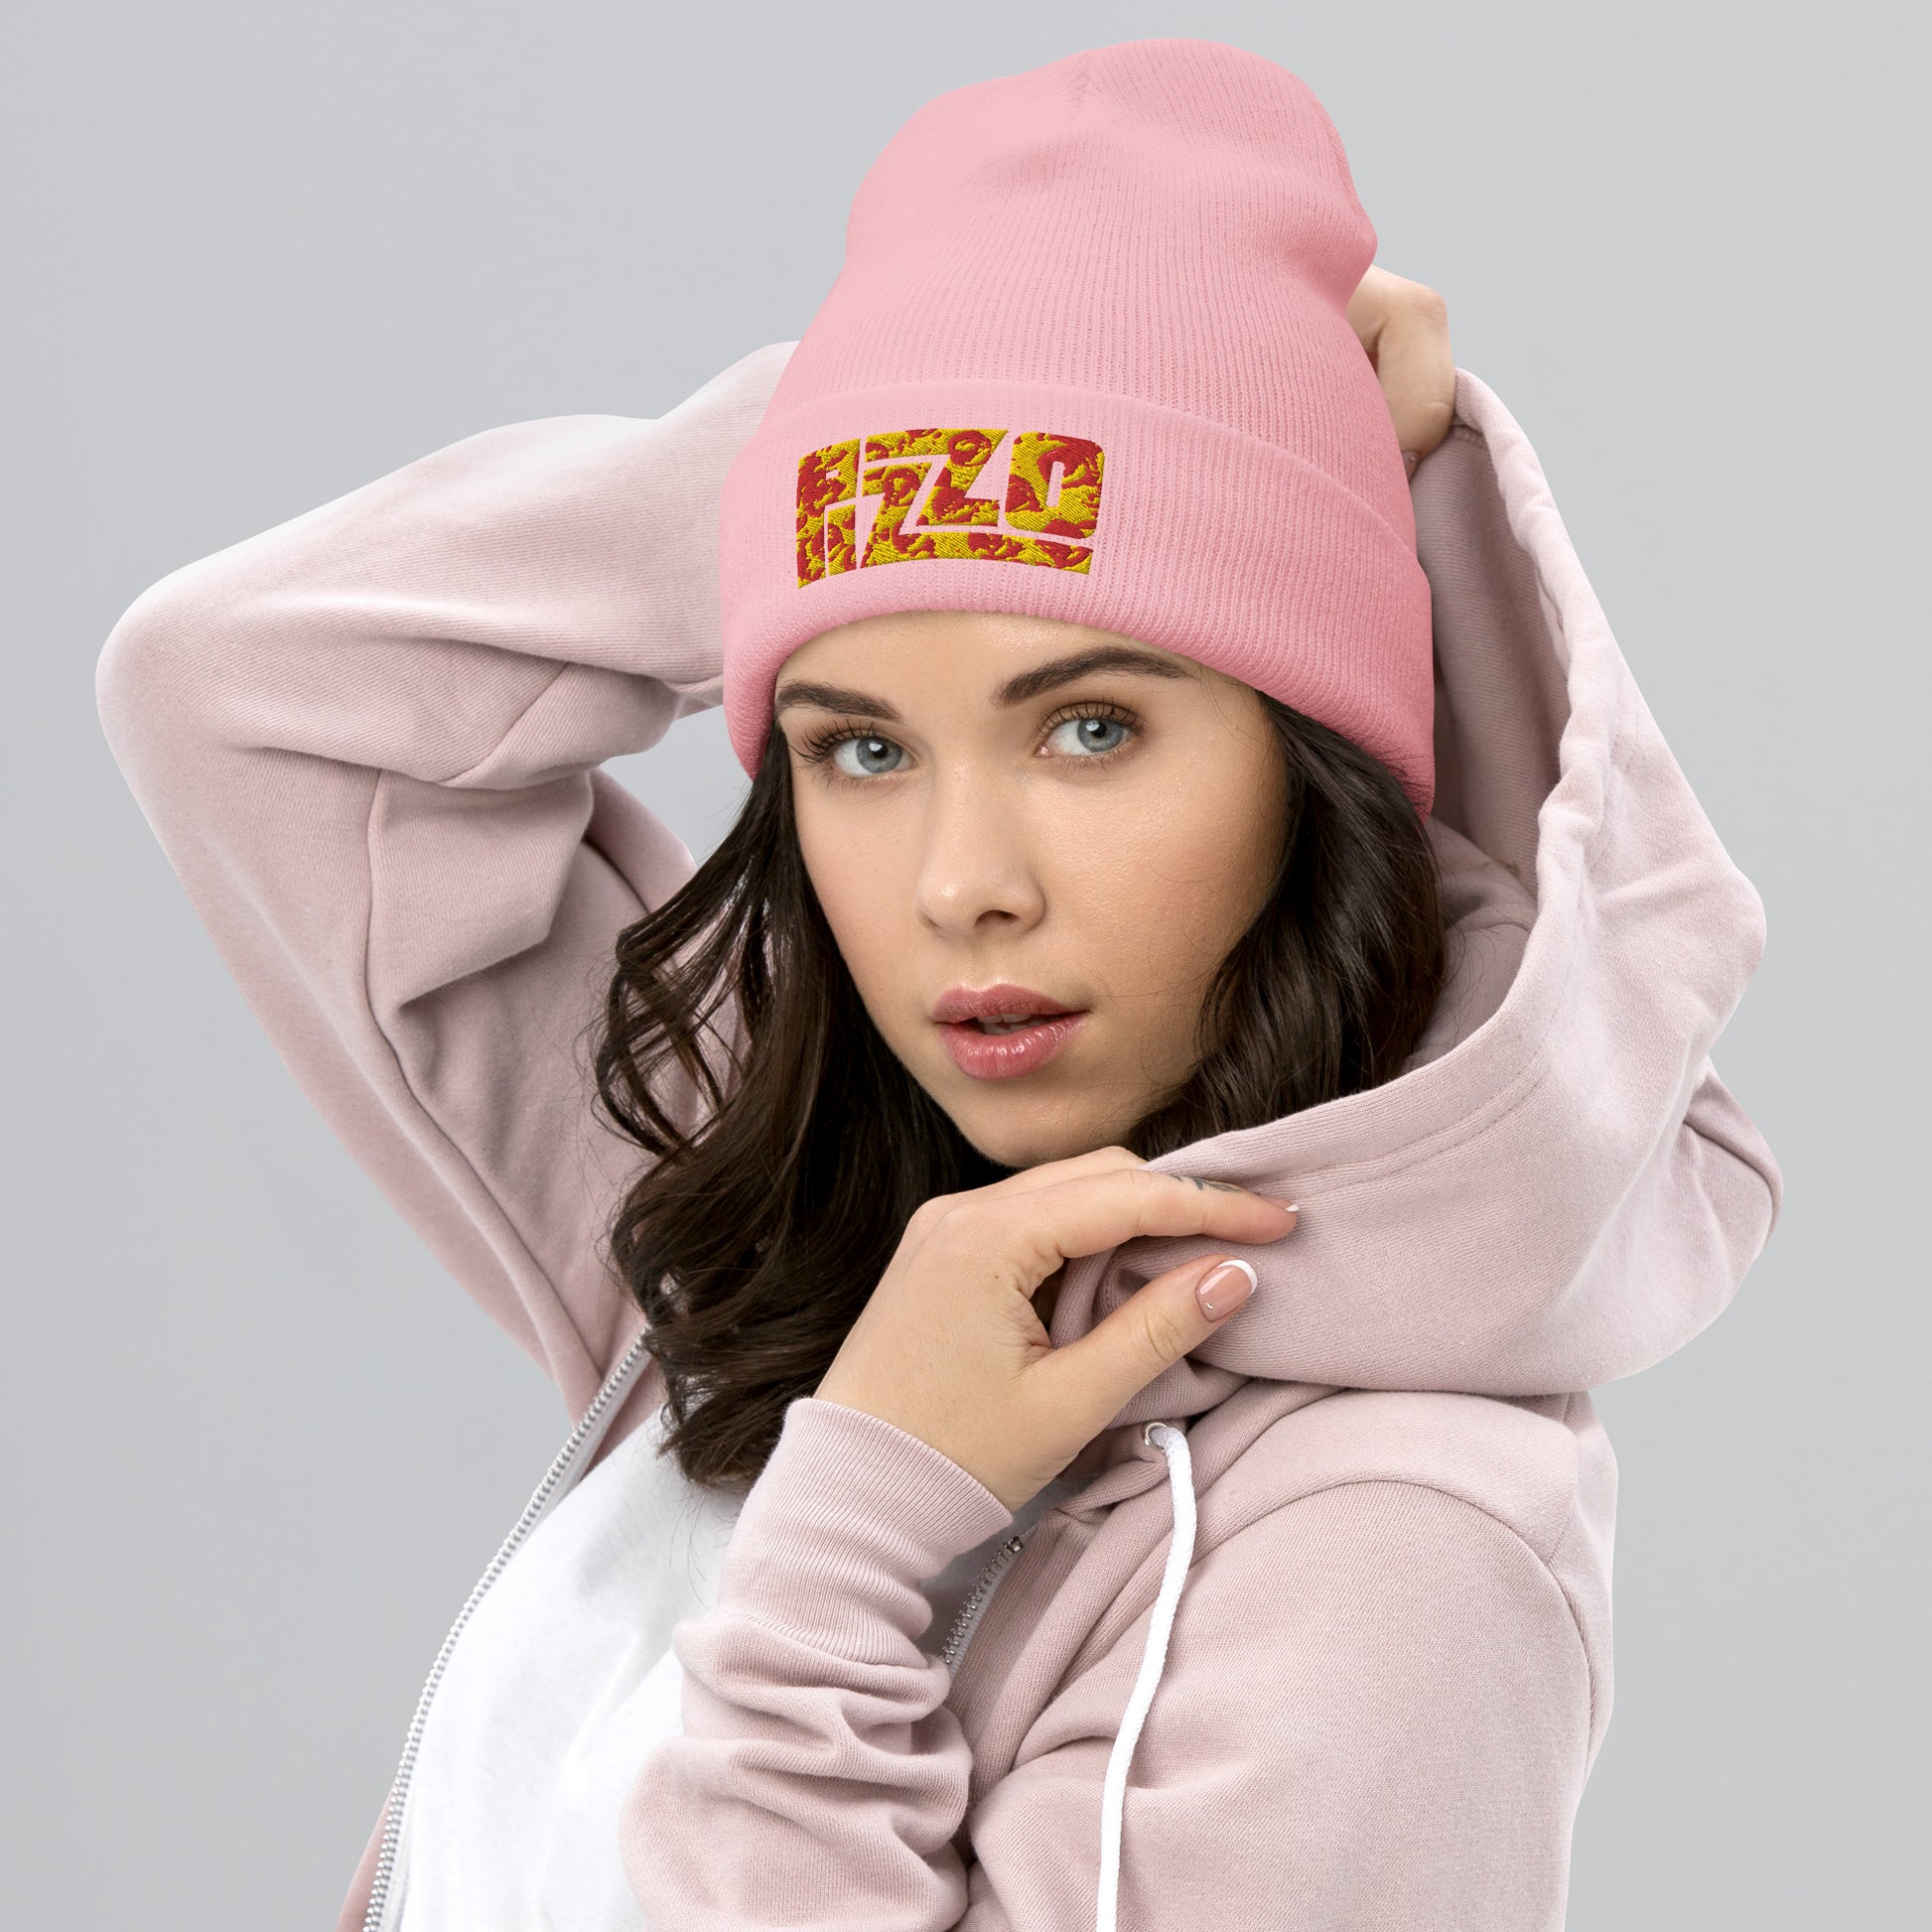 Pizzo Lizzo Pizza Lizzo Merch Lizzo Gift Song Lyrics Lizzo Cuffed Beanie Next Cult Brand